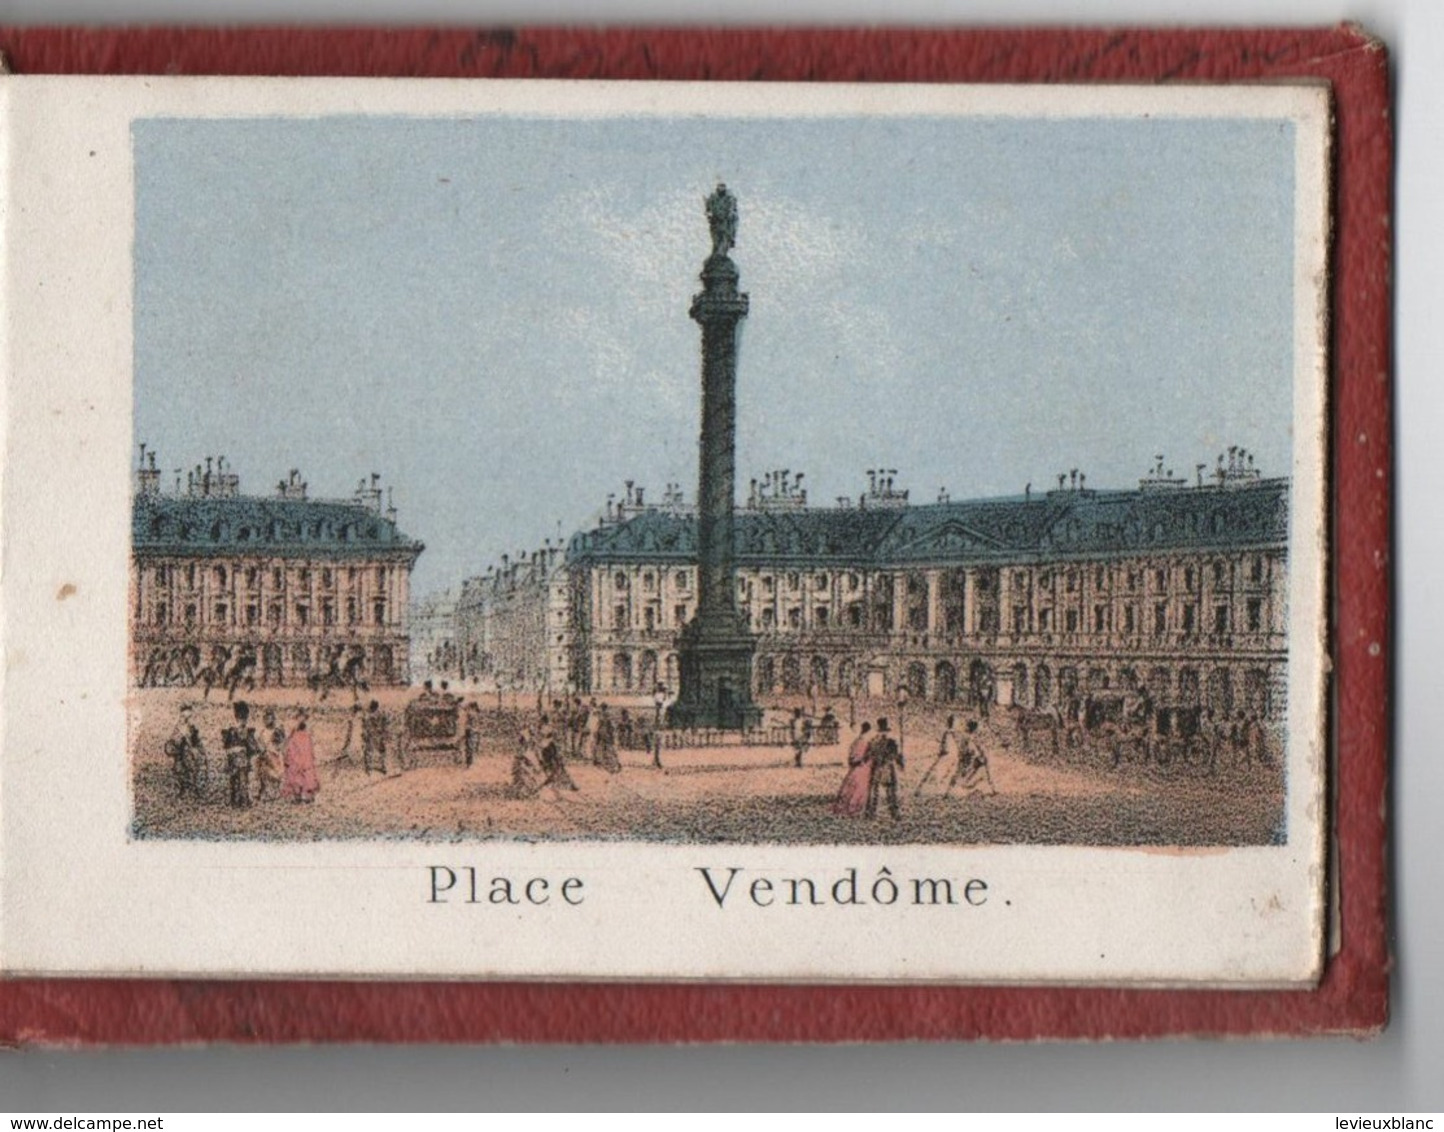 Petit livret souvenir de PARIS/10 Gravures:Madeleine,Bourse,Louvre,OpéraTTuileries,Vendôme,Etoile,etc/Vers 1858  NAP14